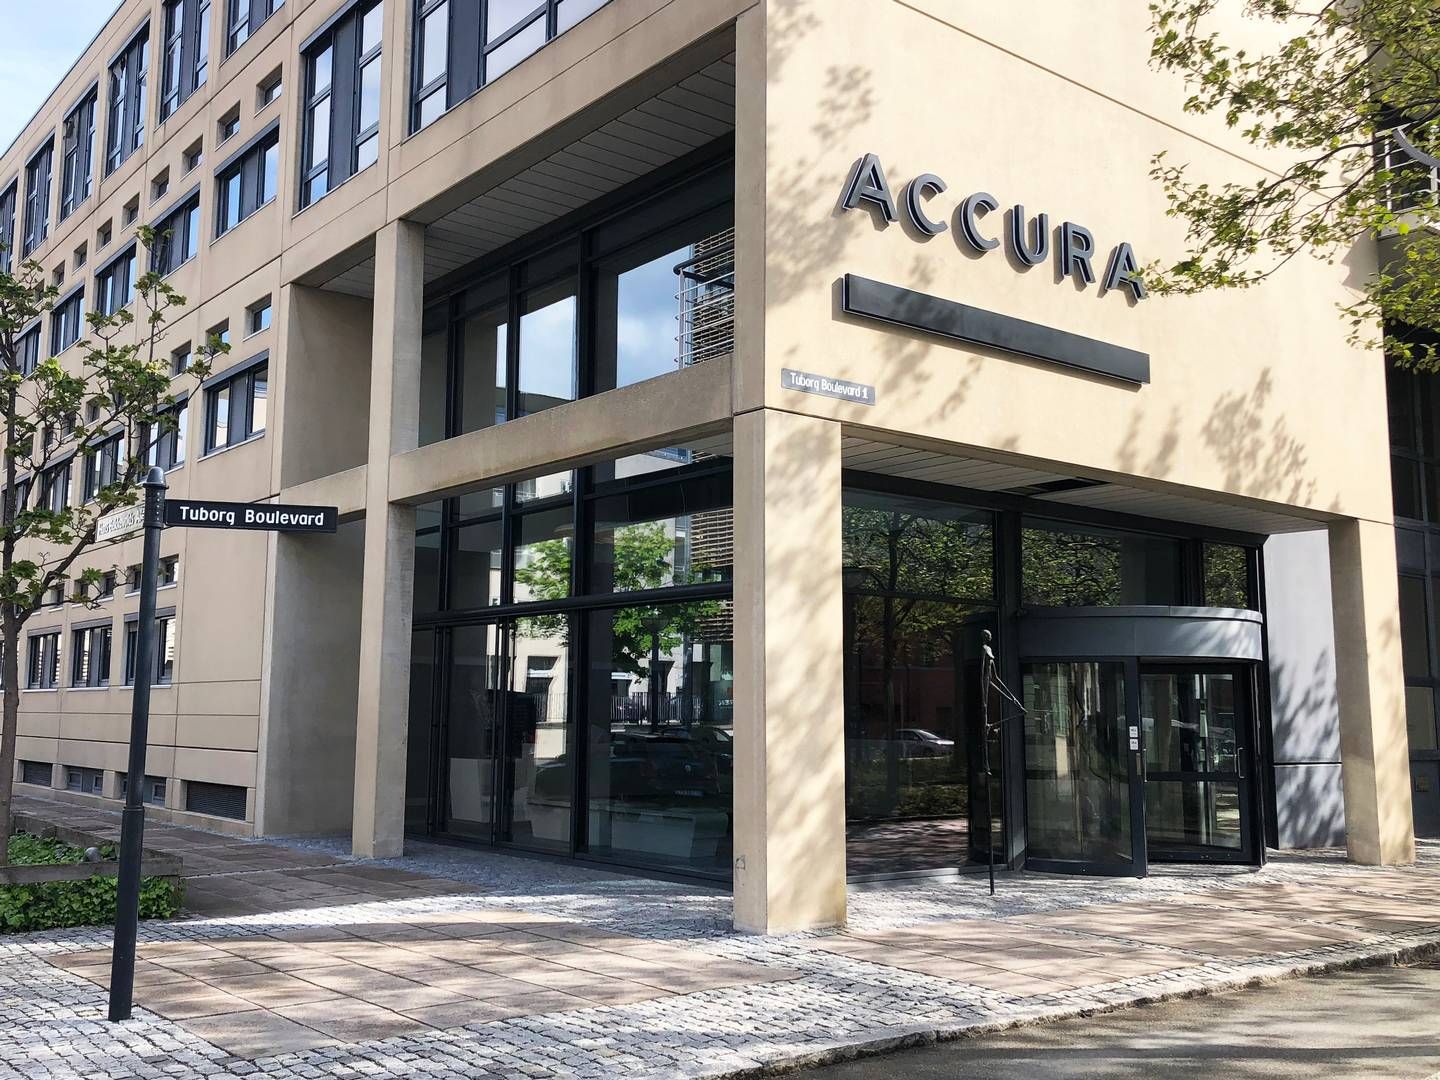 Fra første januar kan flere advokater glæde sig over nye titler hos Accura. | Foto: Accura / Pr